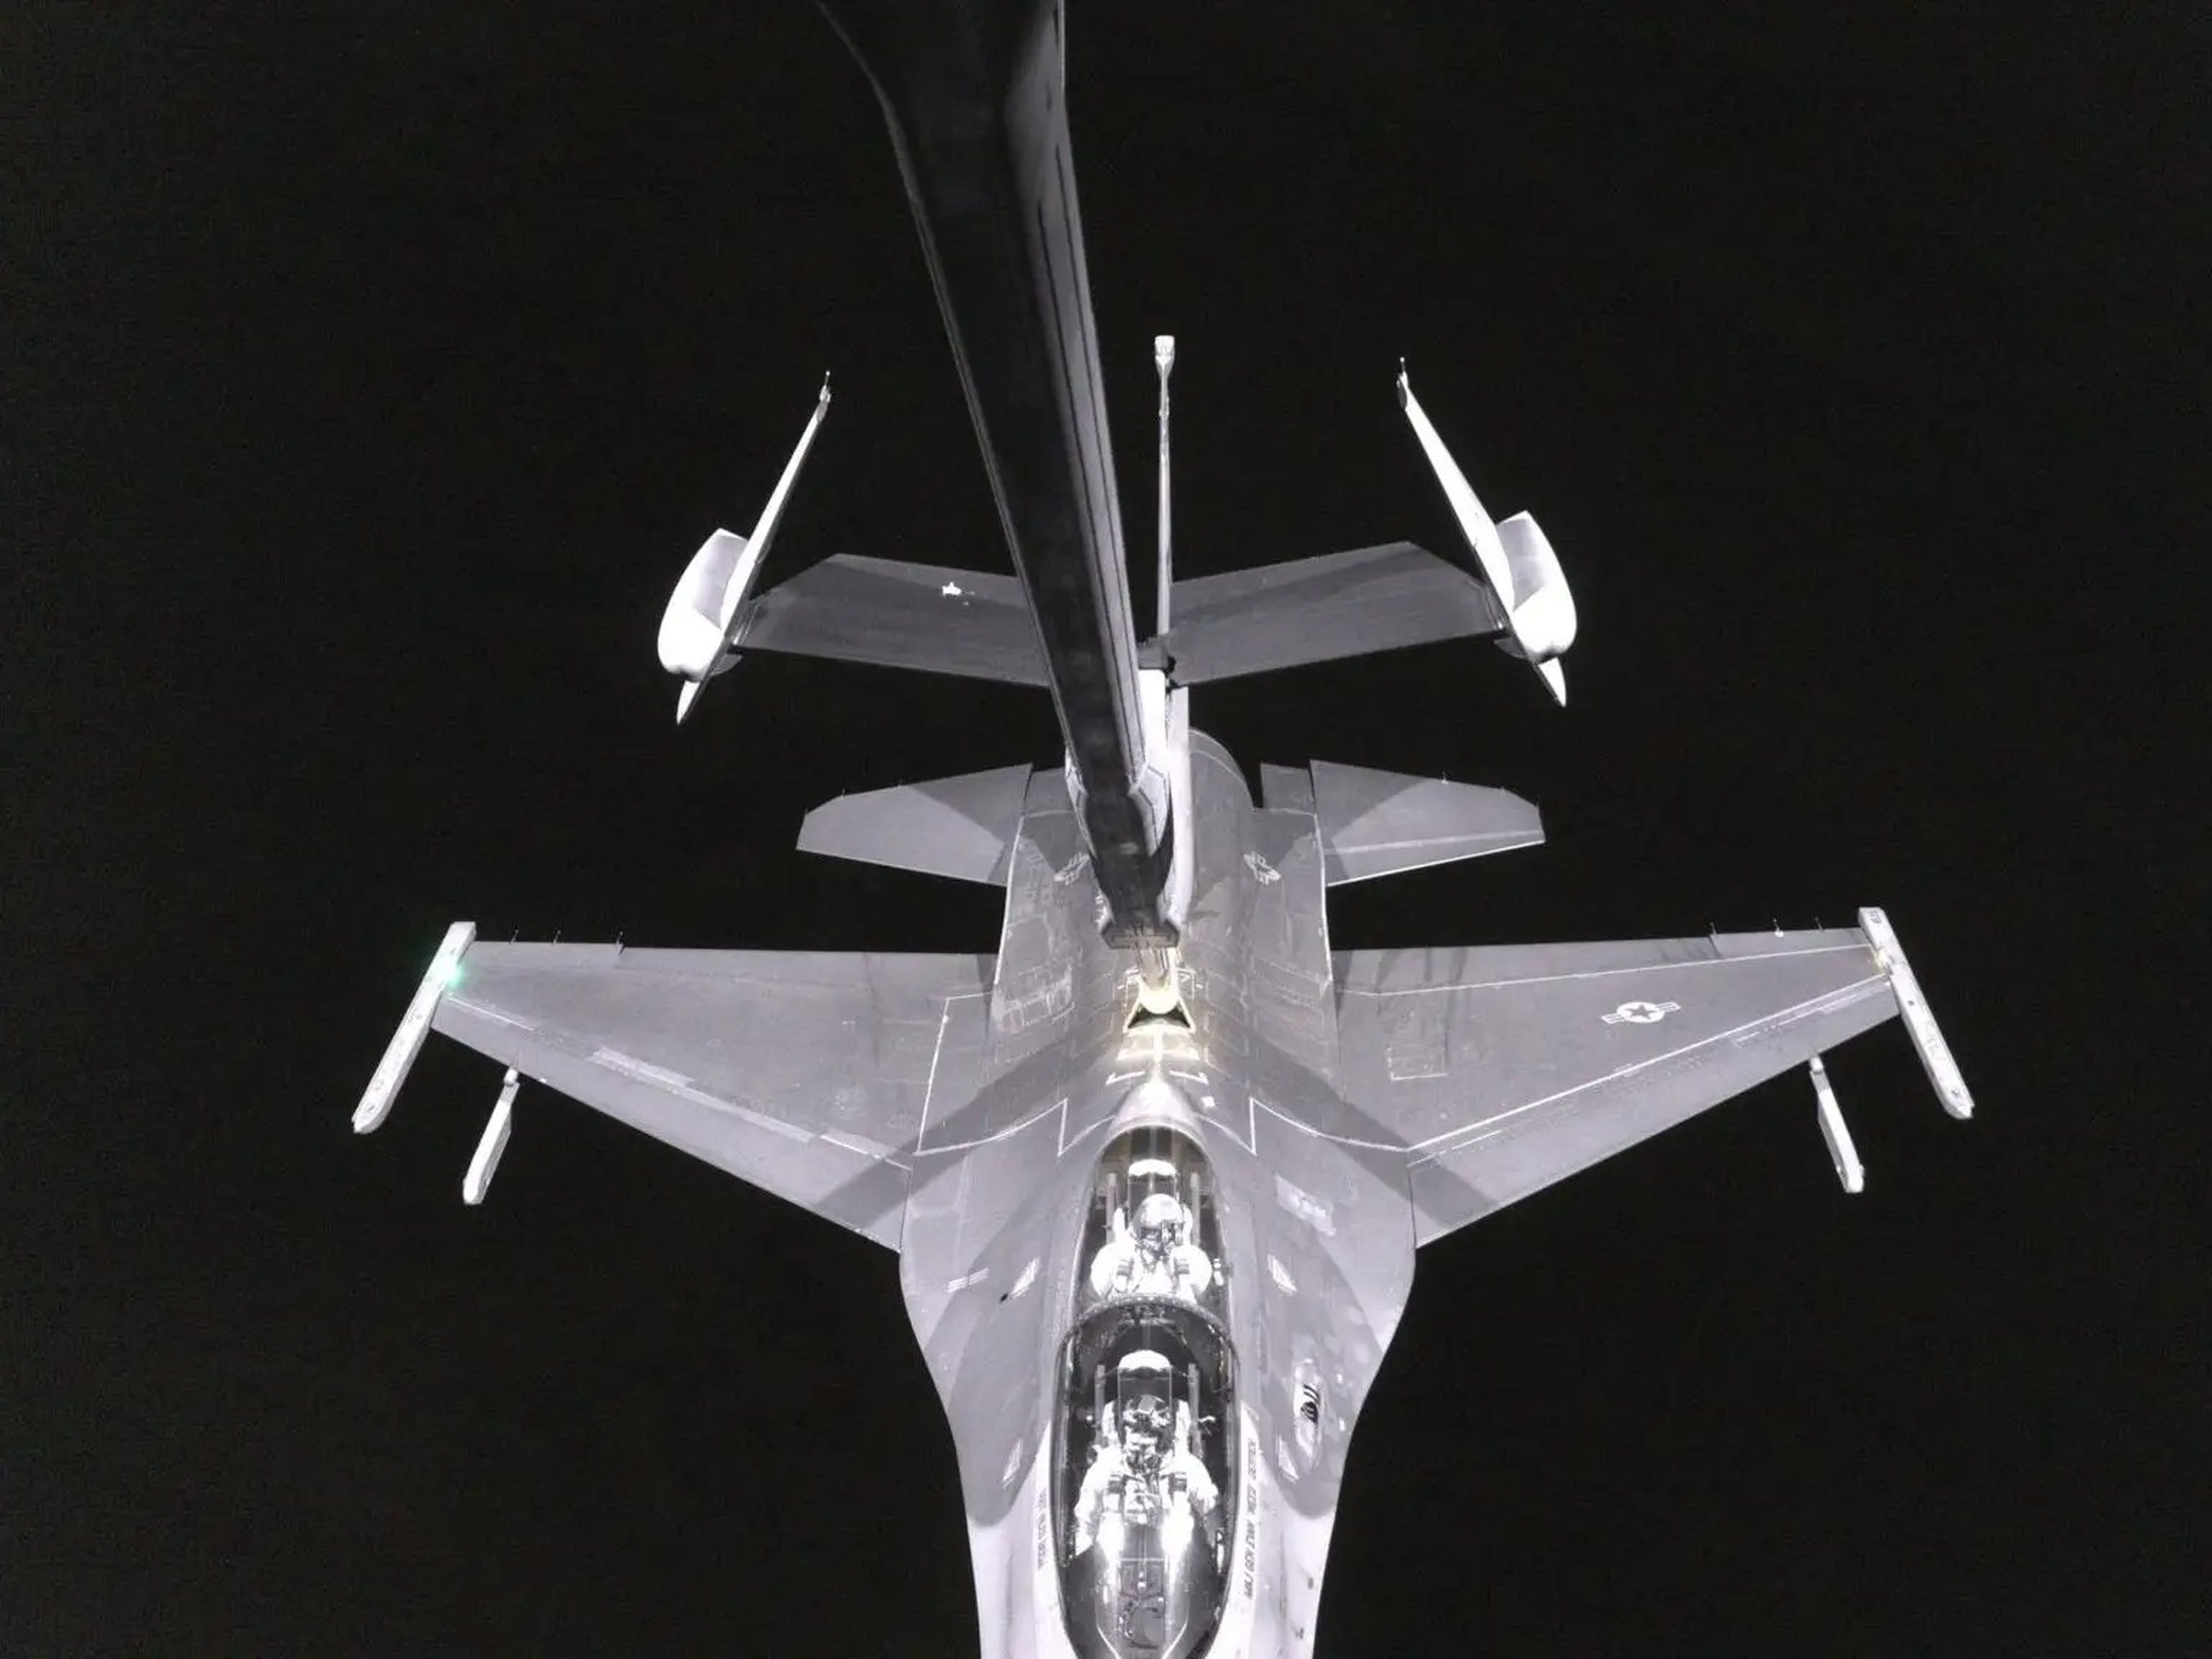 Ejemplo del sistema RVS 2.0 3D en acción con el KC-46 repostando un caza F-16 de noche.